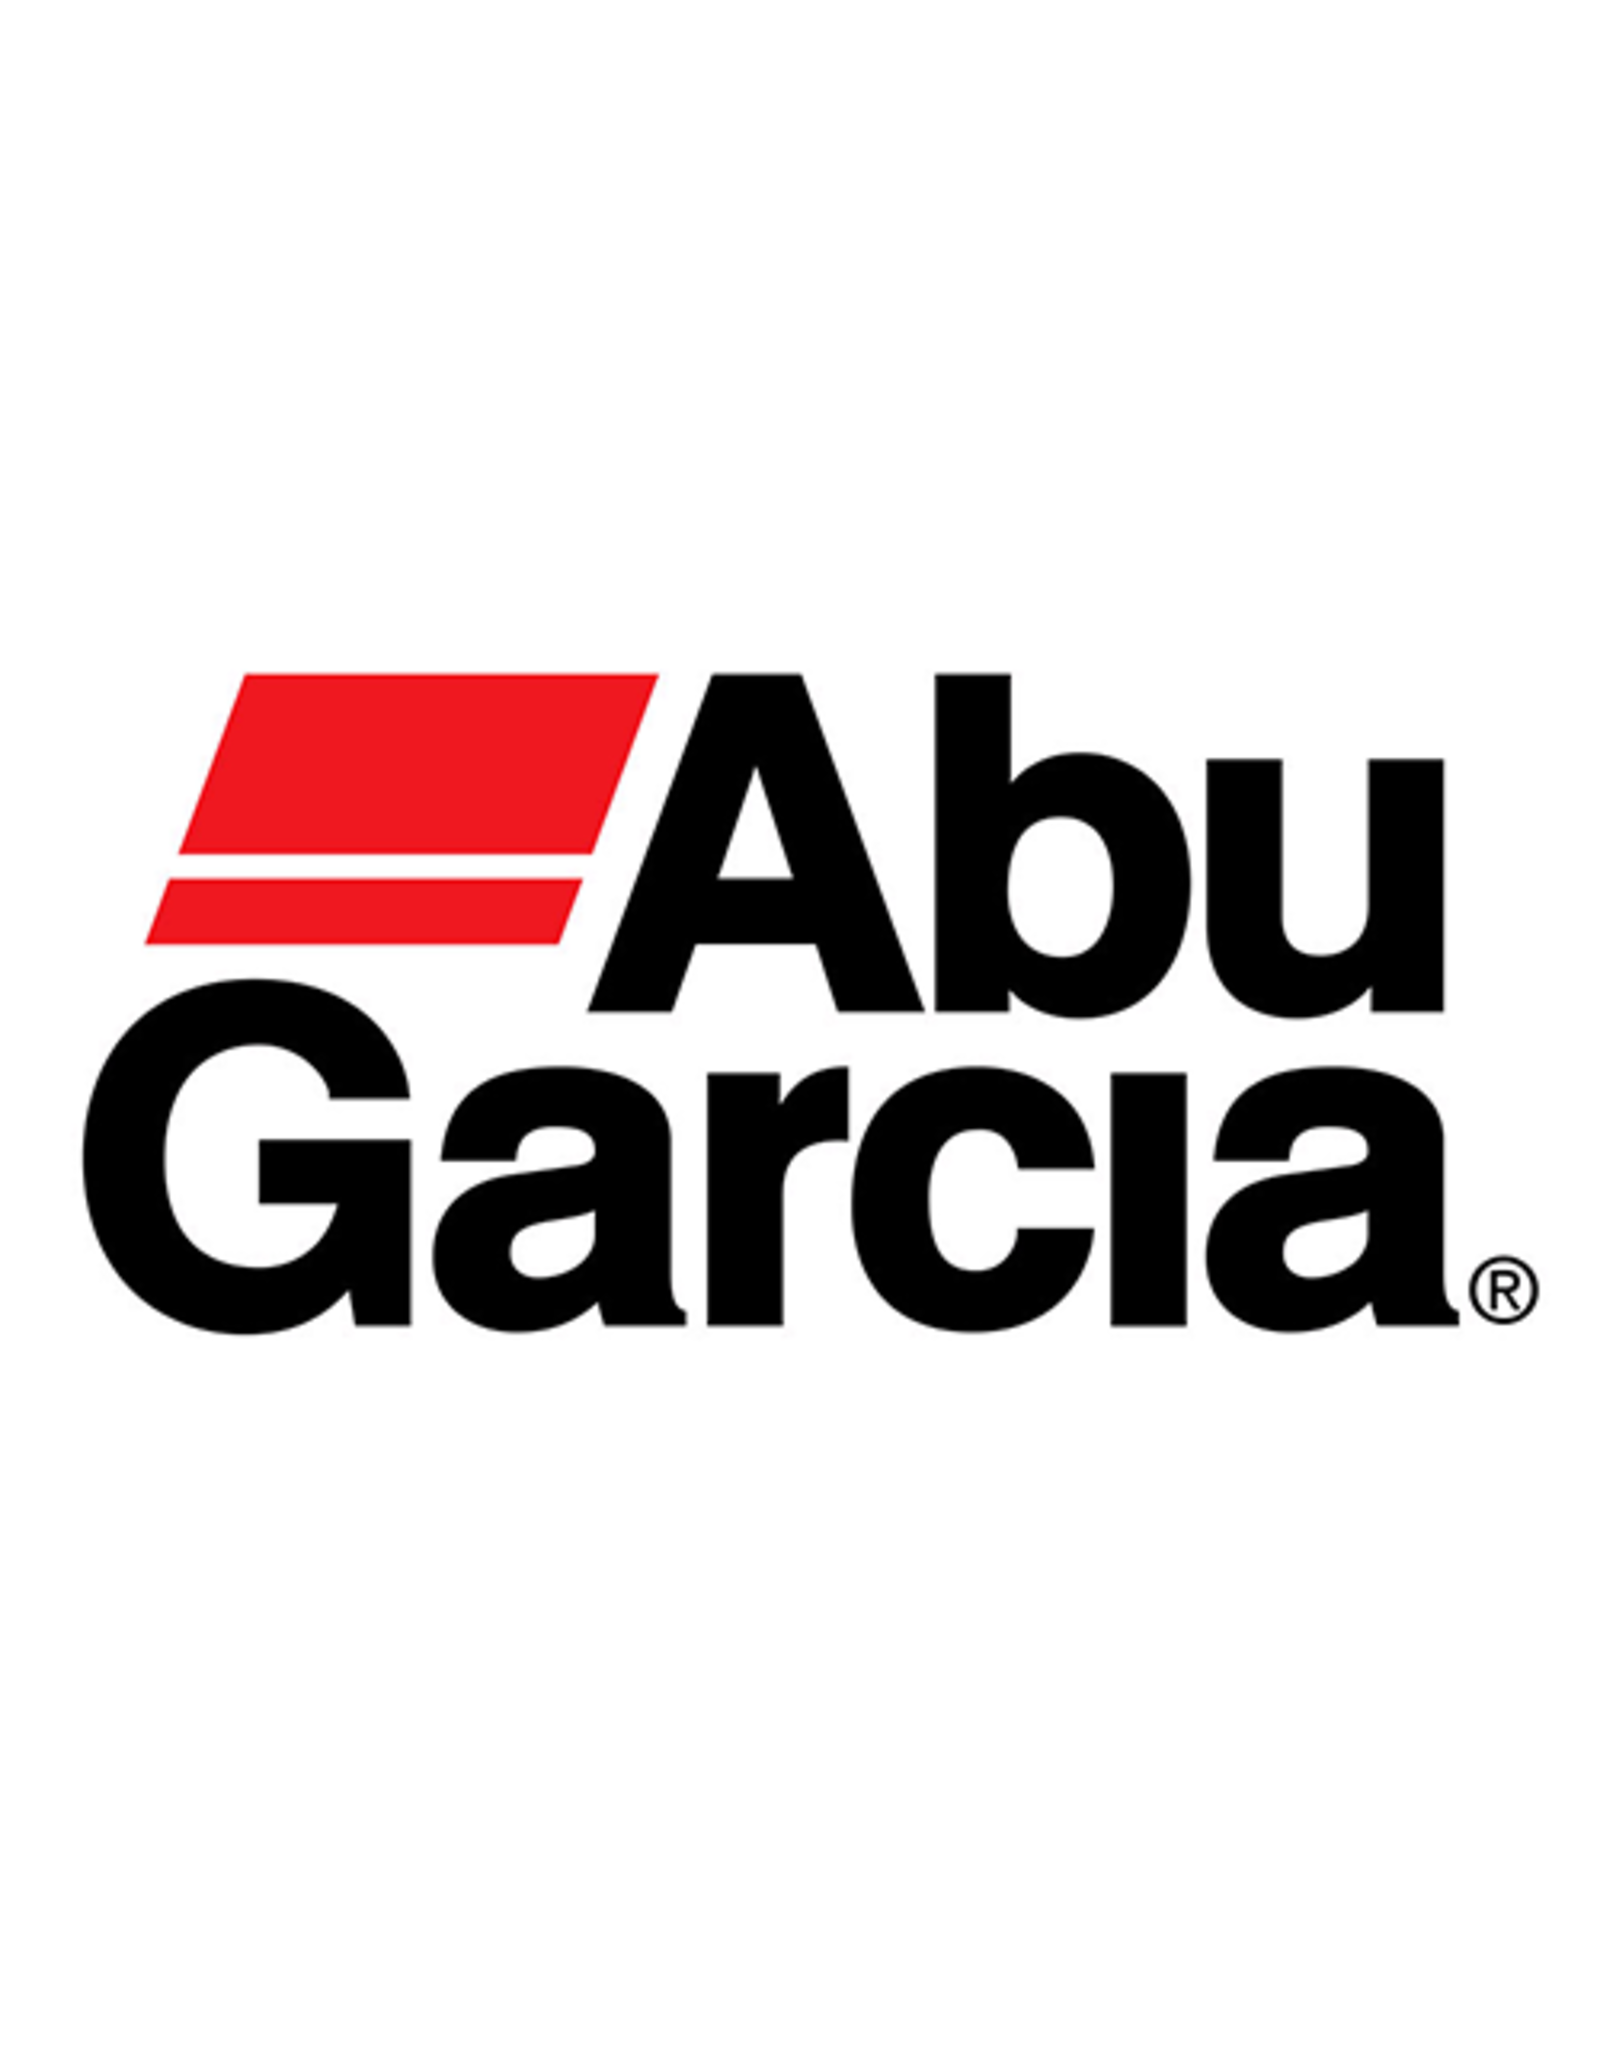 Abu Garcia 1281145  BEARING HOUSING